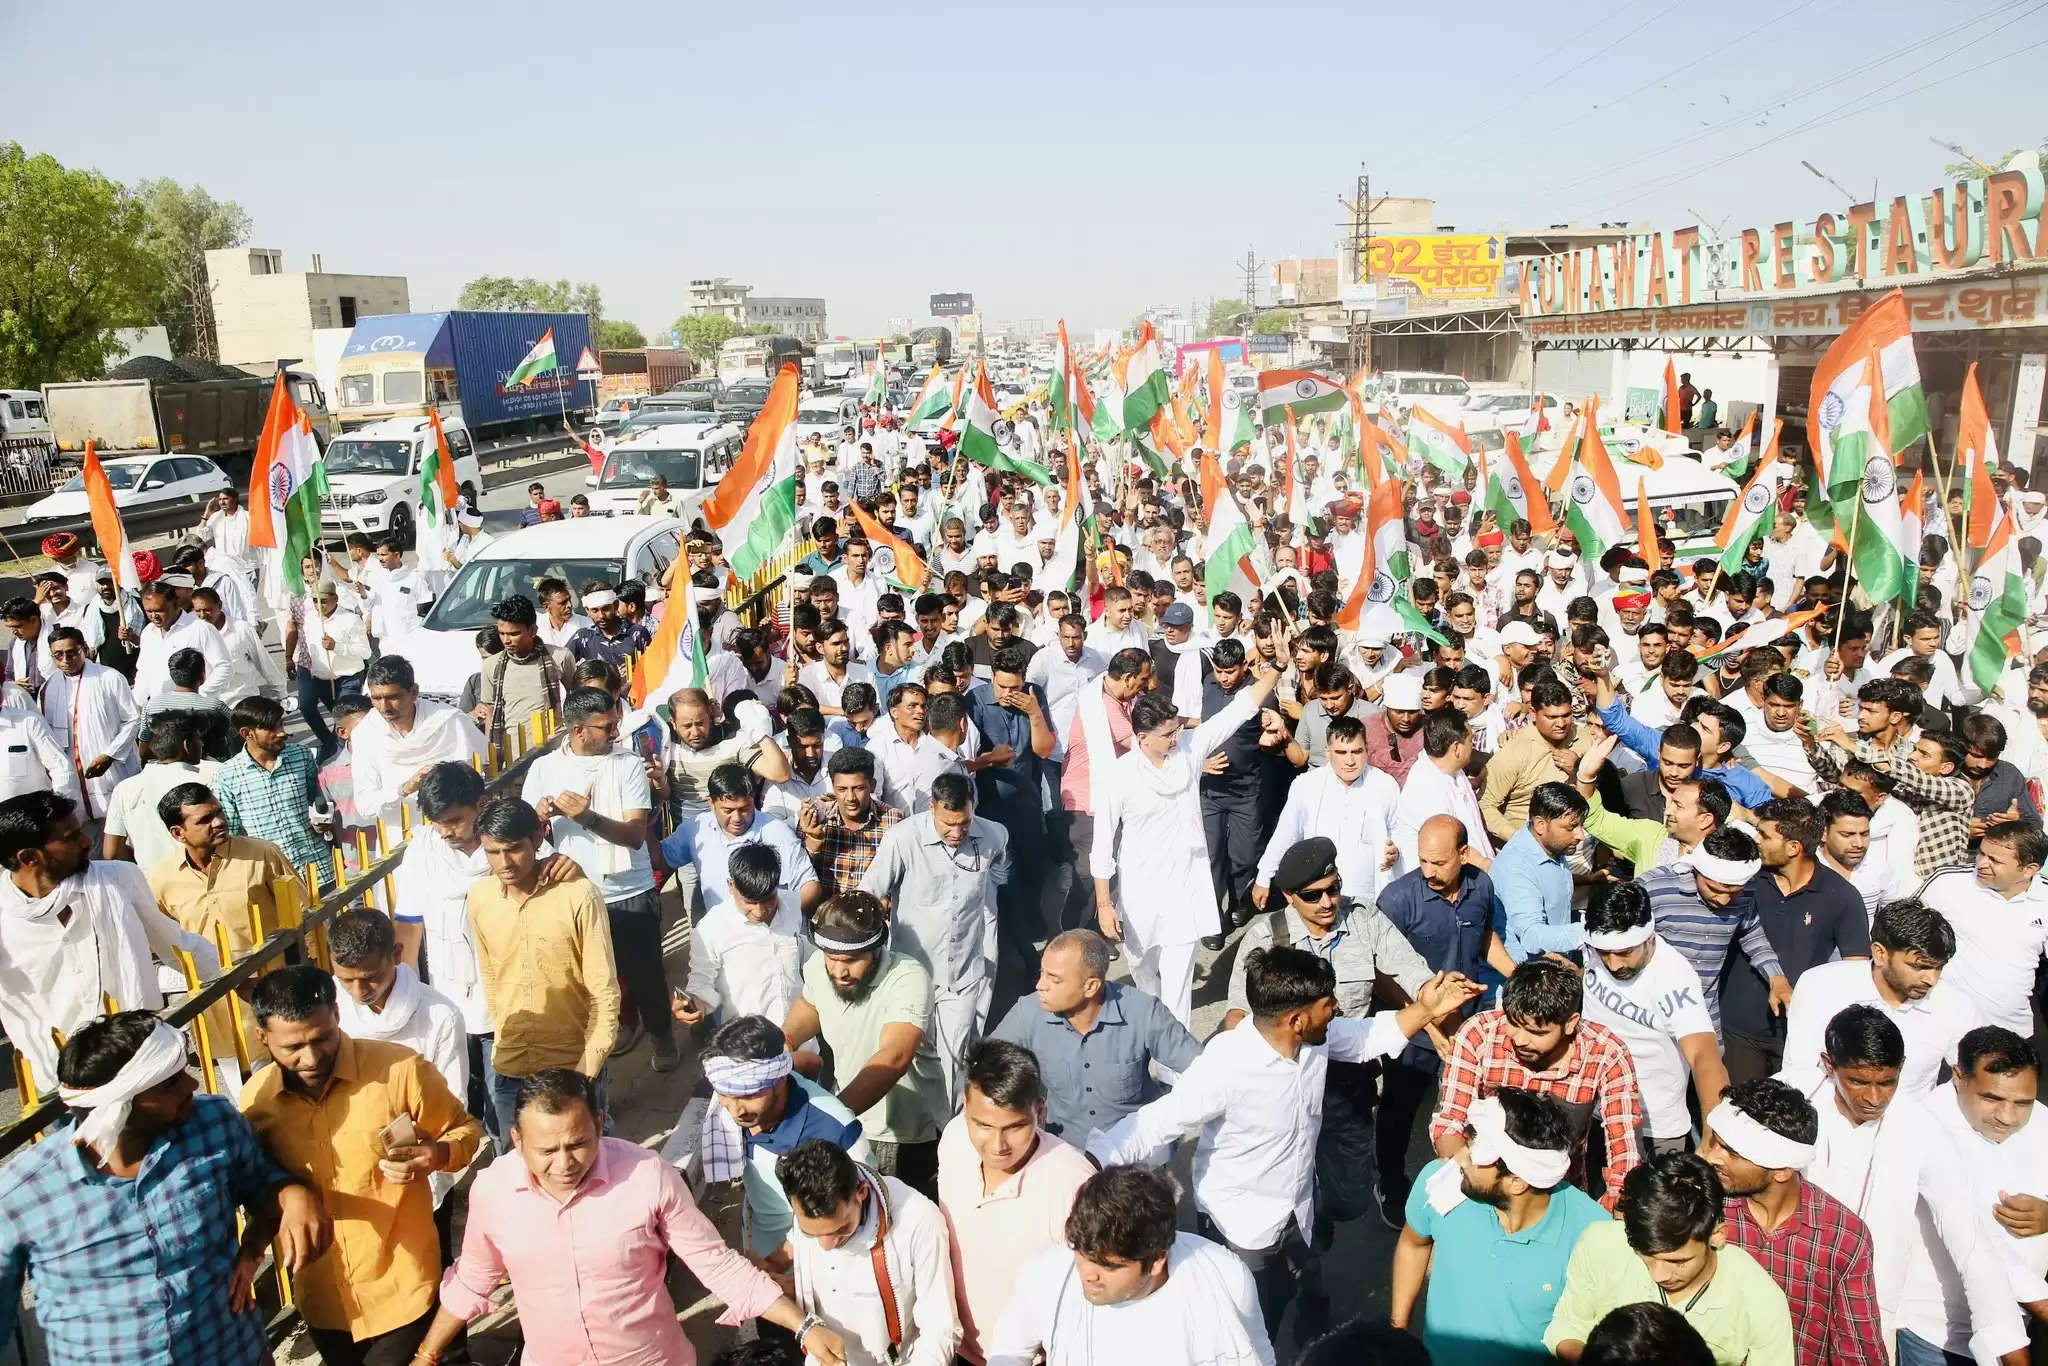 जन संघर्ष यात्रा : हजारों समर्थकों के साथ जयपुर की तरफ पैदल बढ़ रहे पायलट